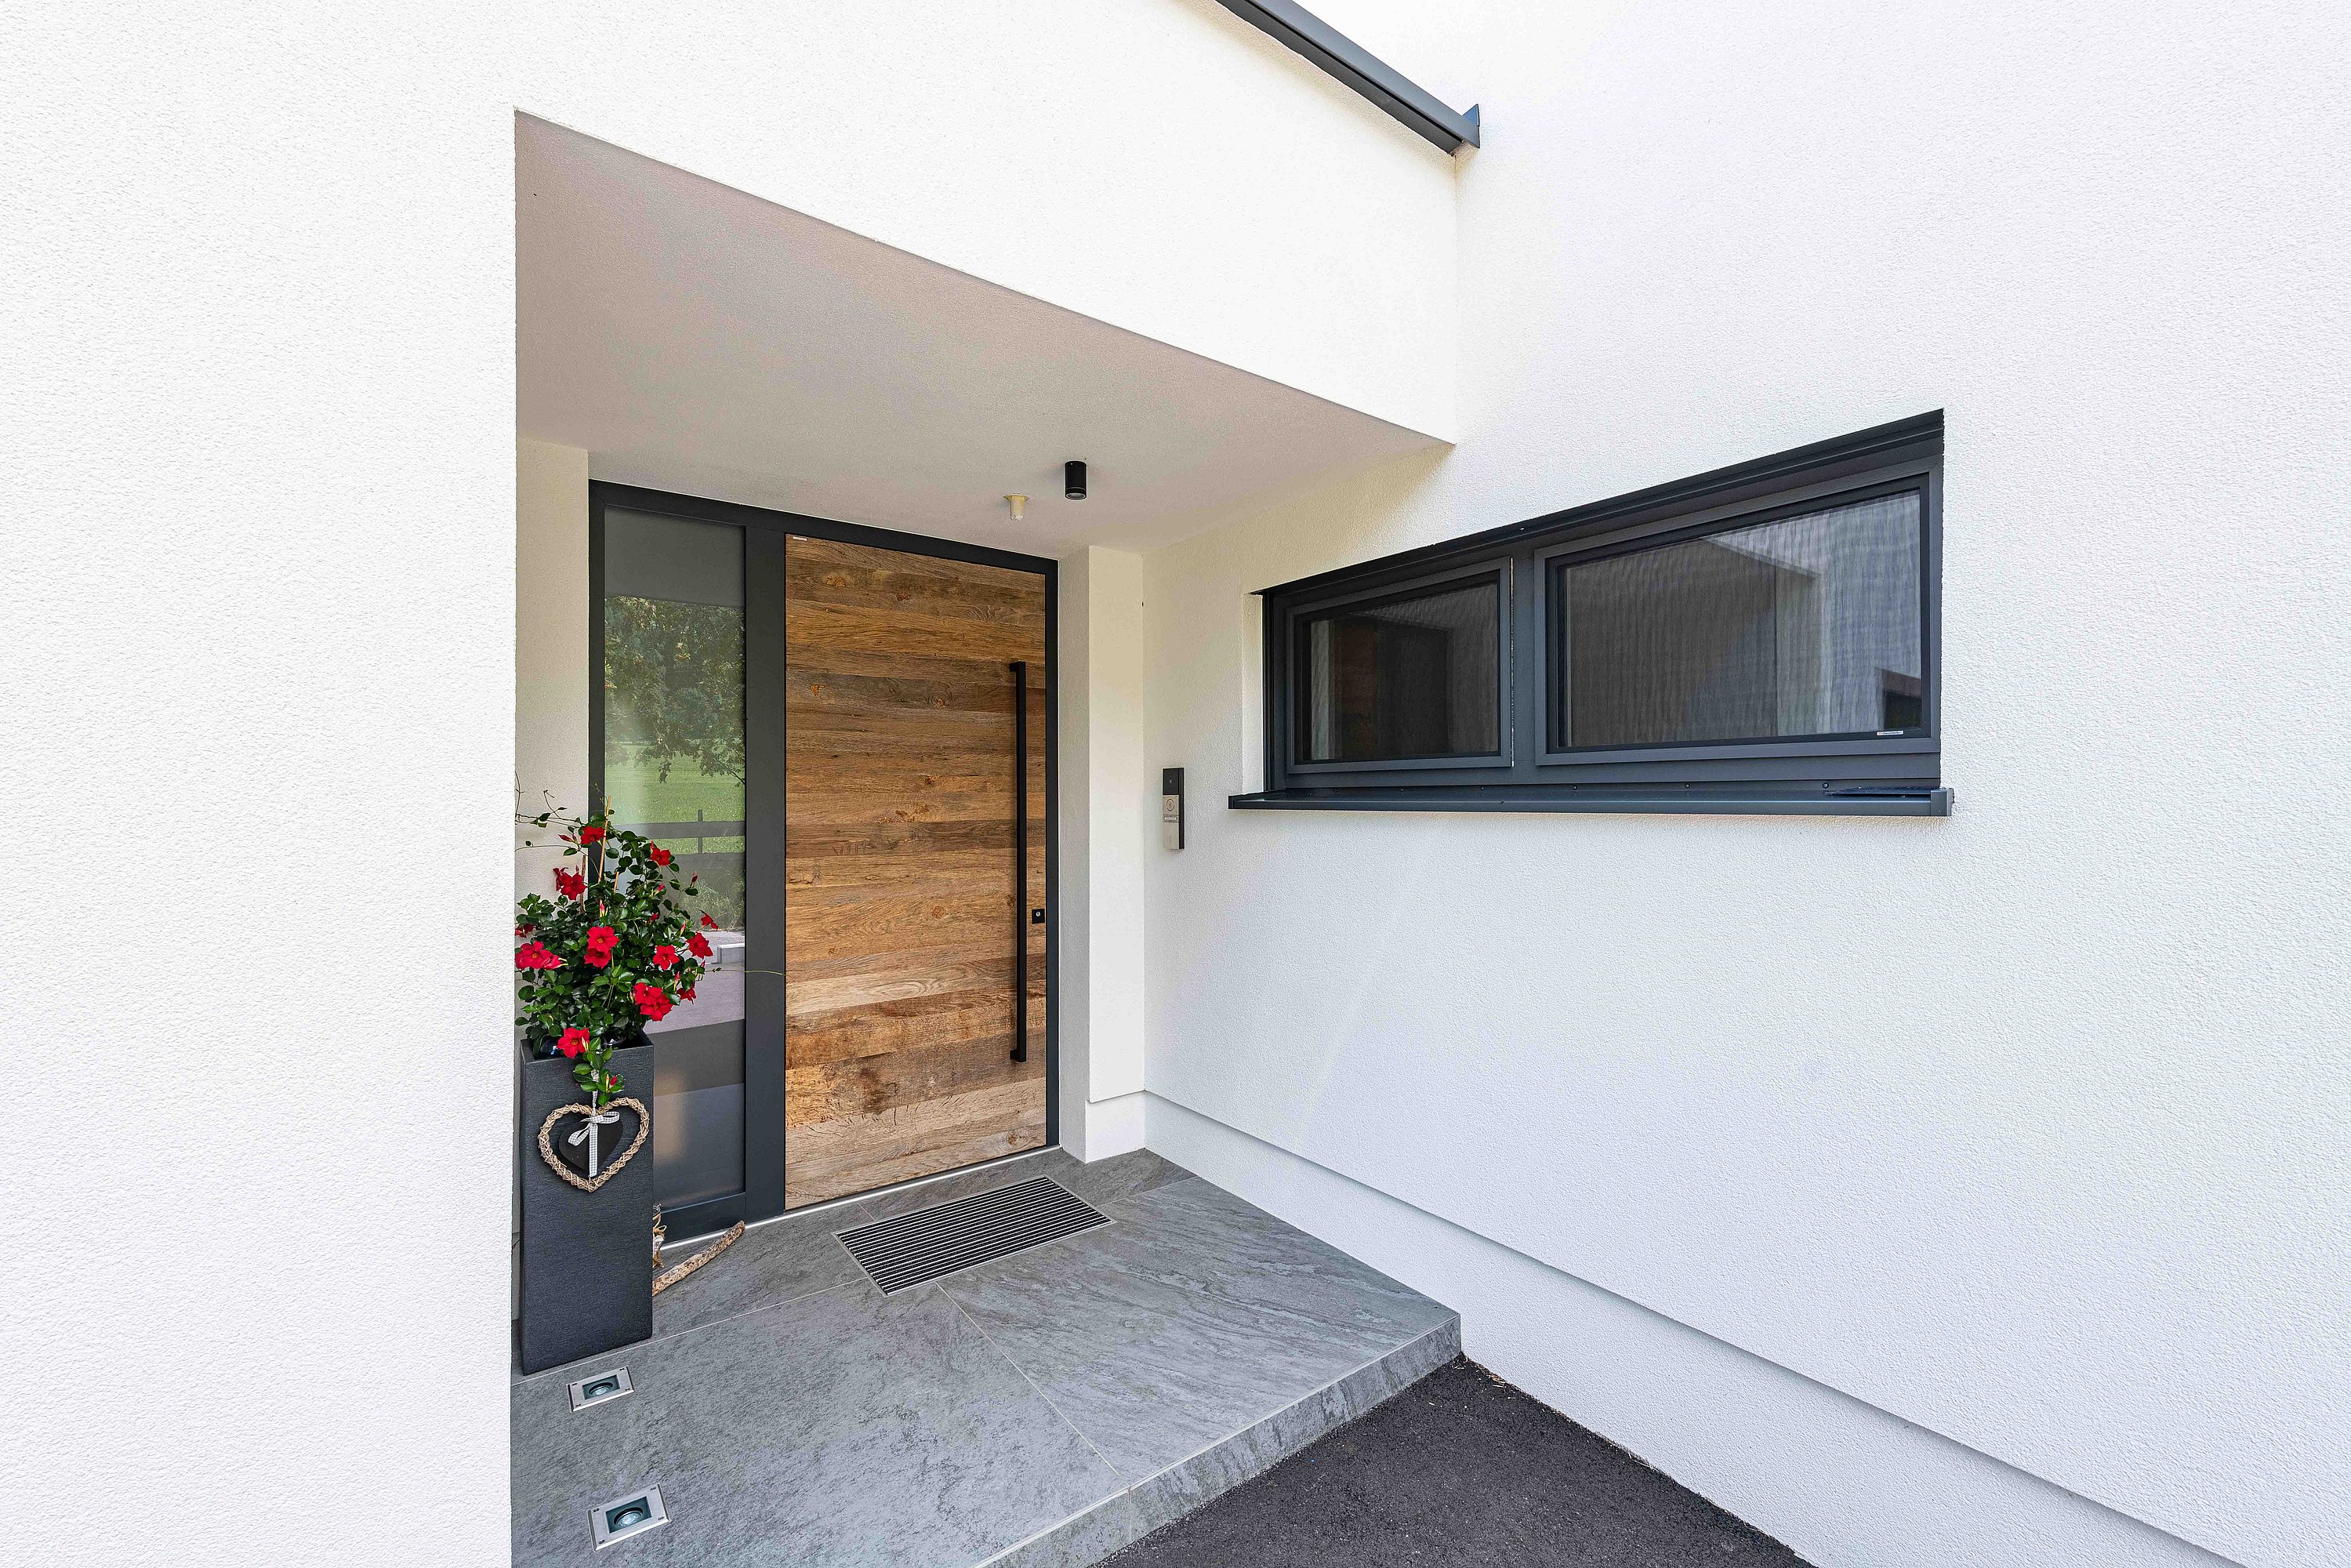 Außenansicht eines Eingangsbereichs mit Holz-Haustür und verglastem Seitenteil